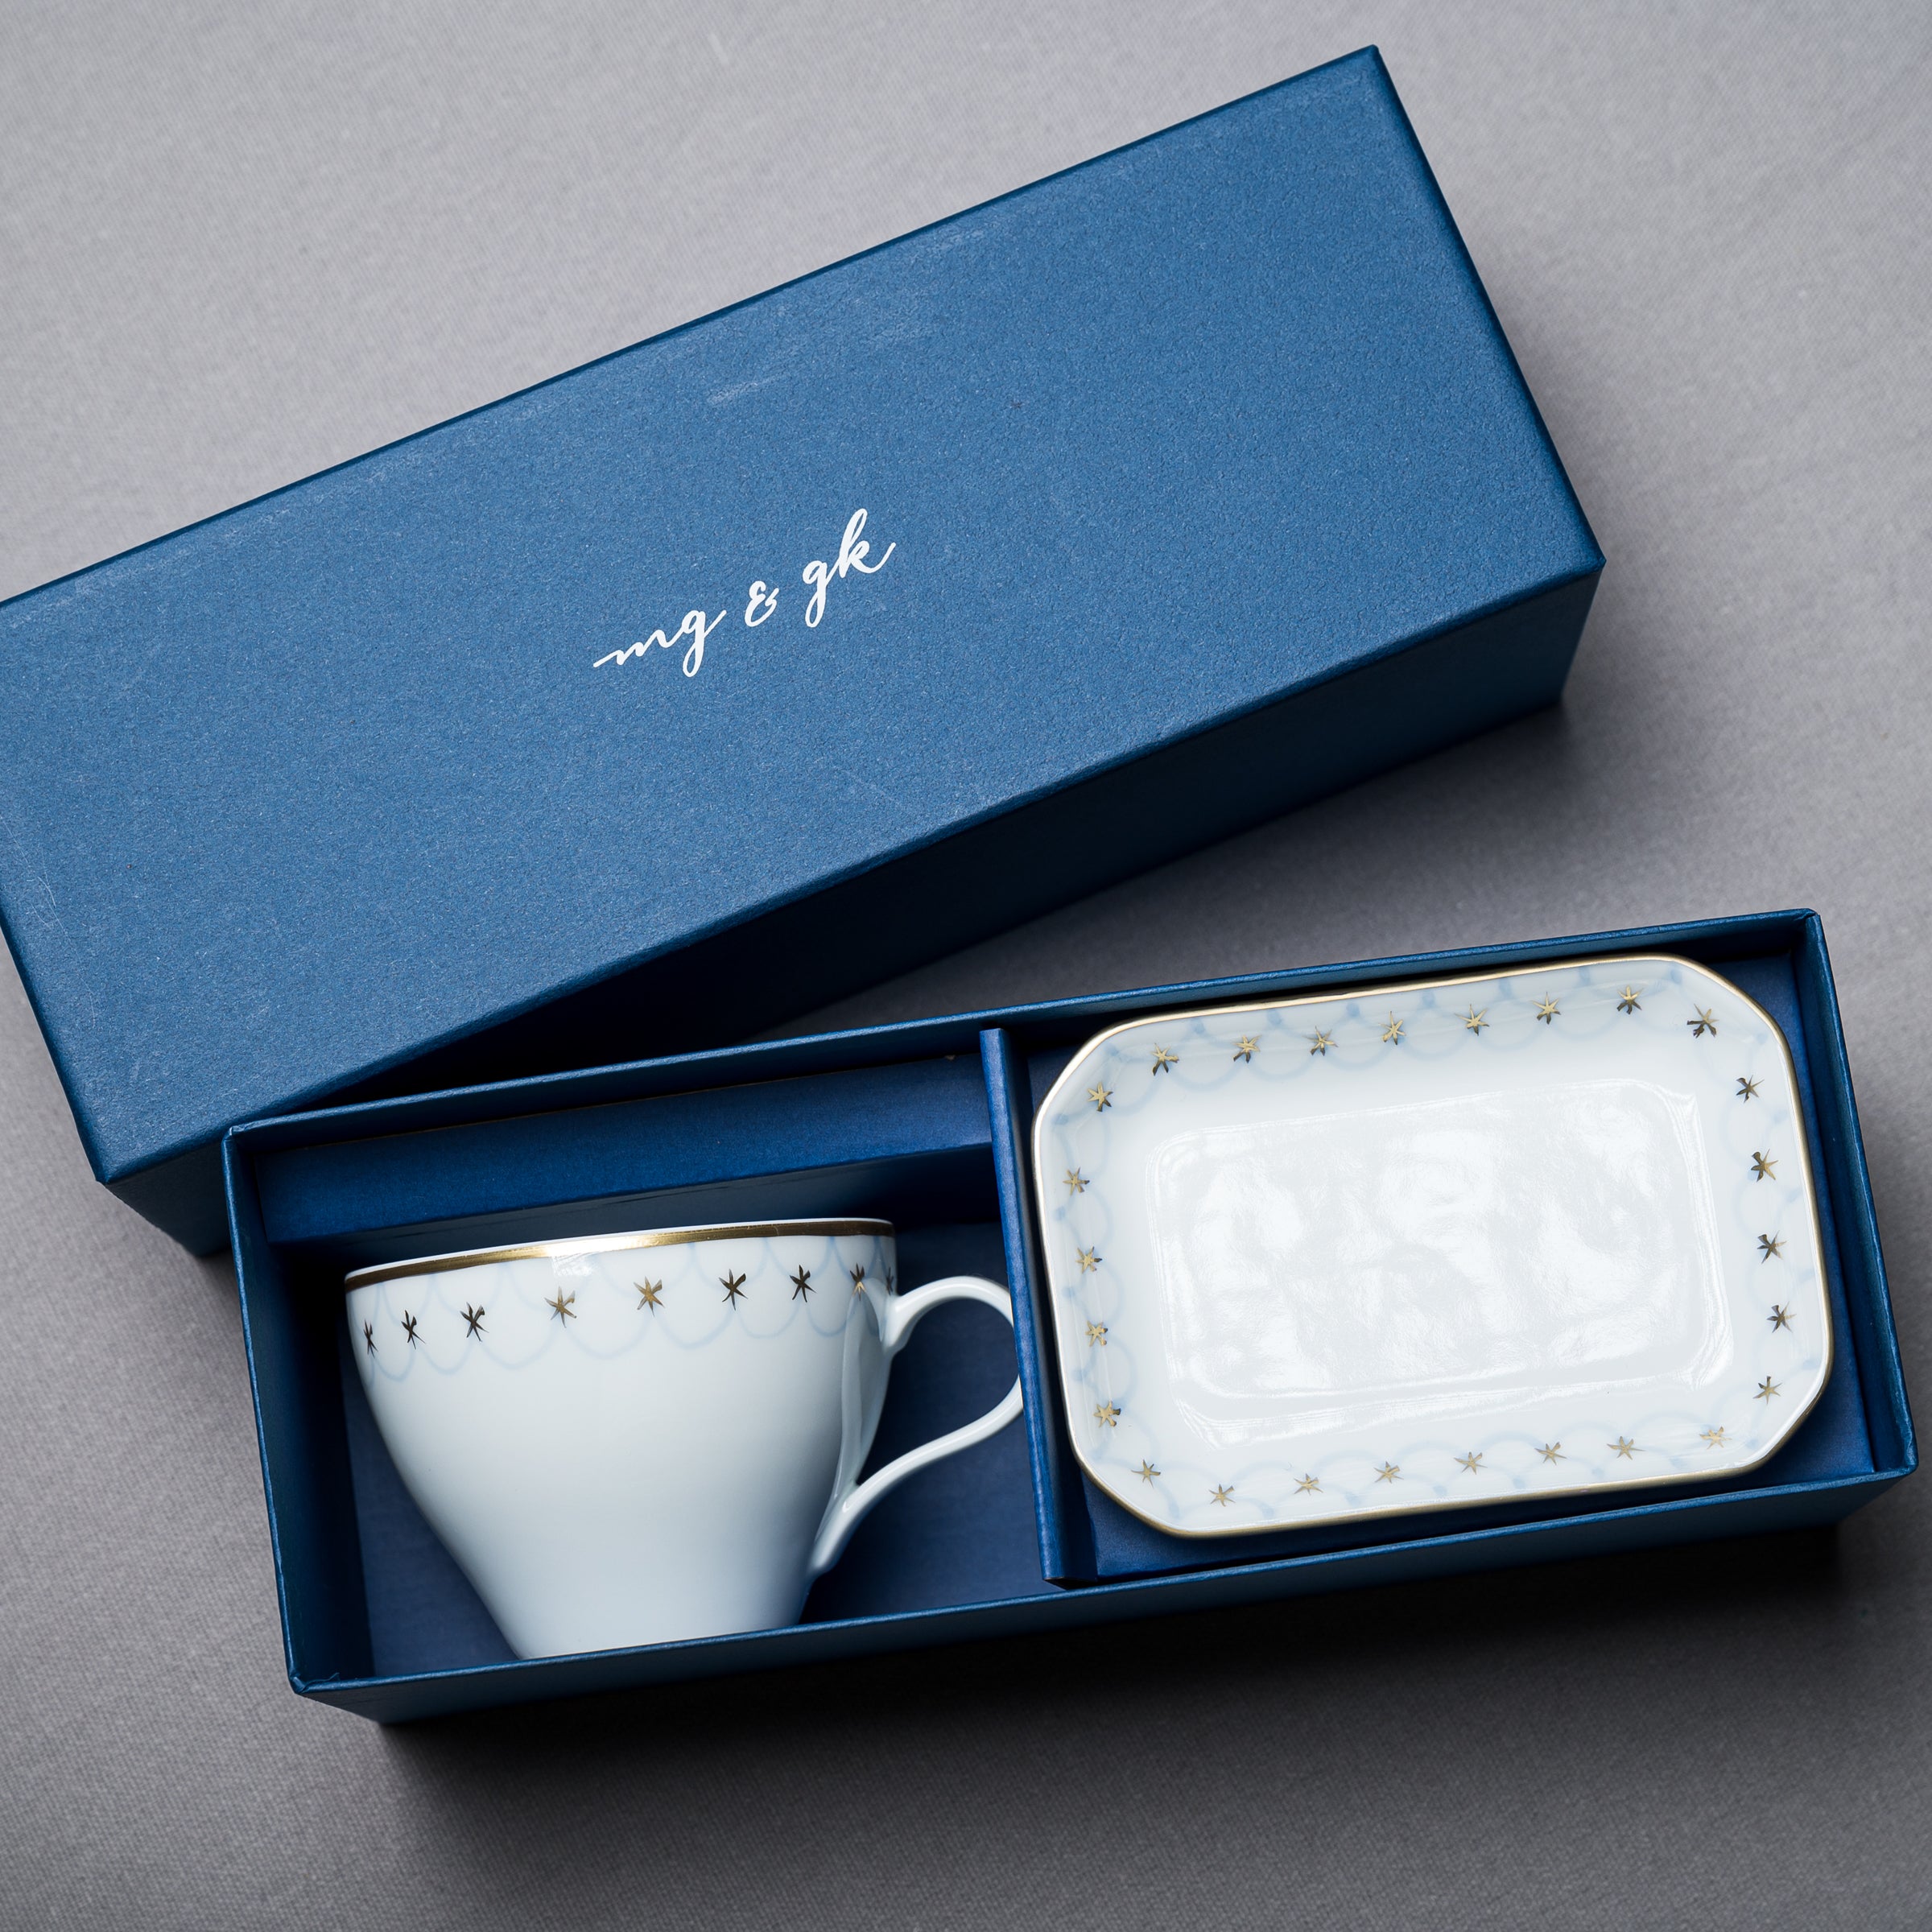 Arita Teacup & Saucer Plate Gift Set / Nami 波 (Wave)